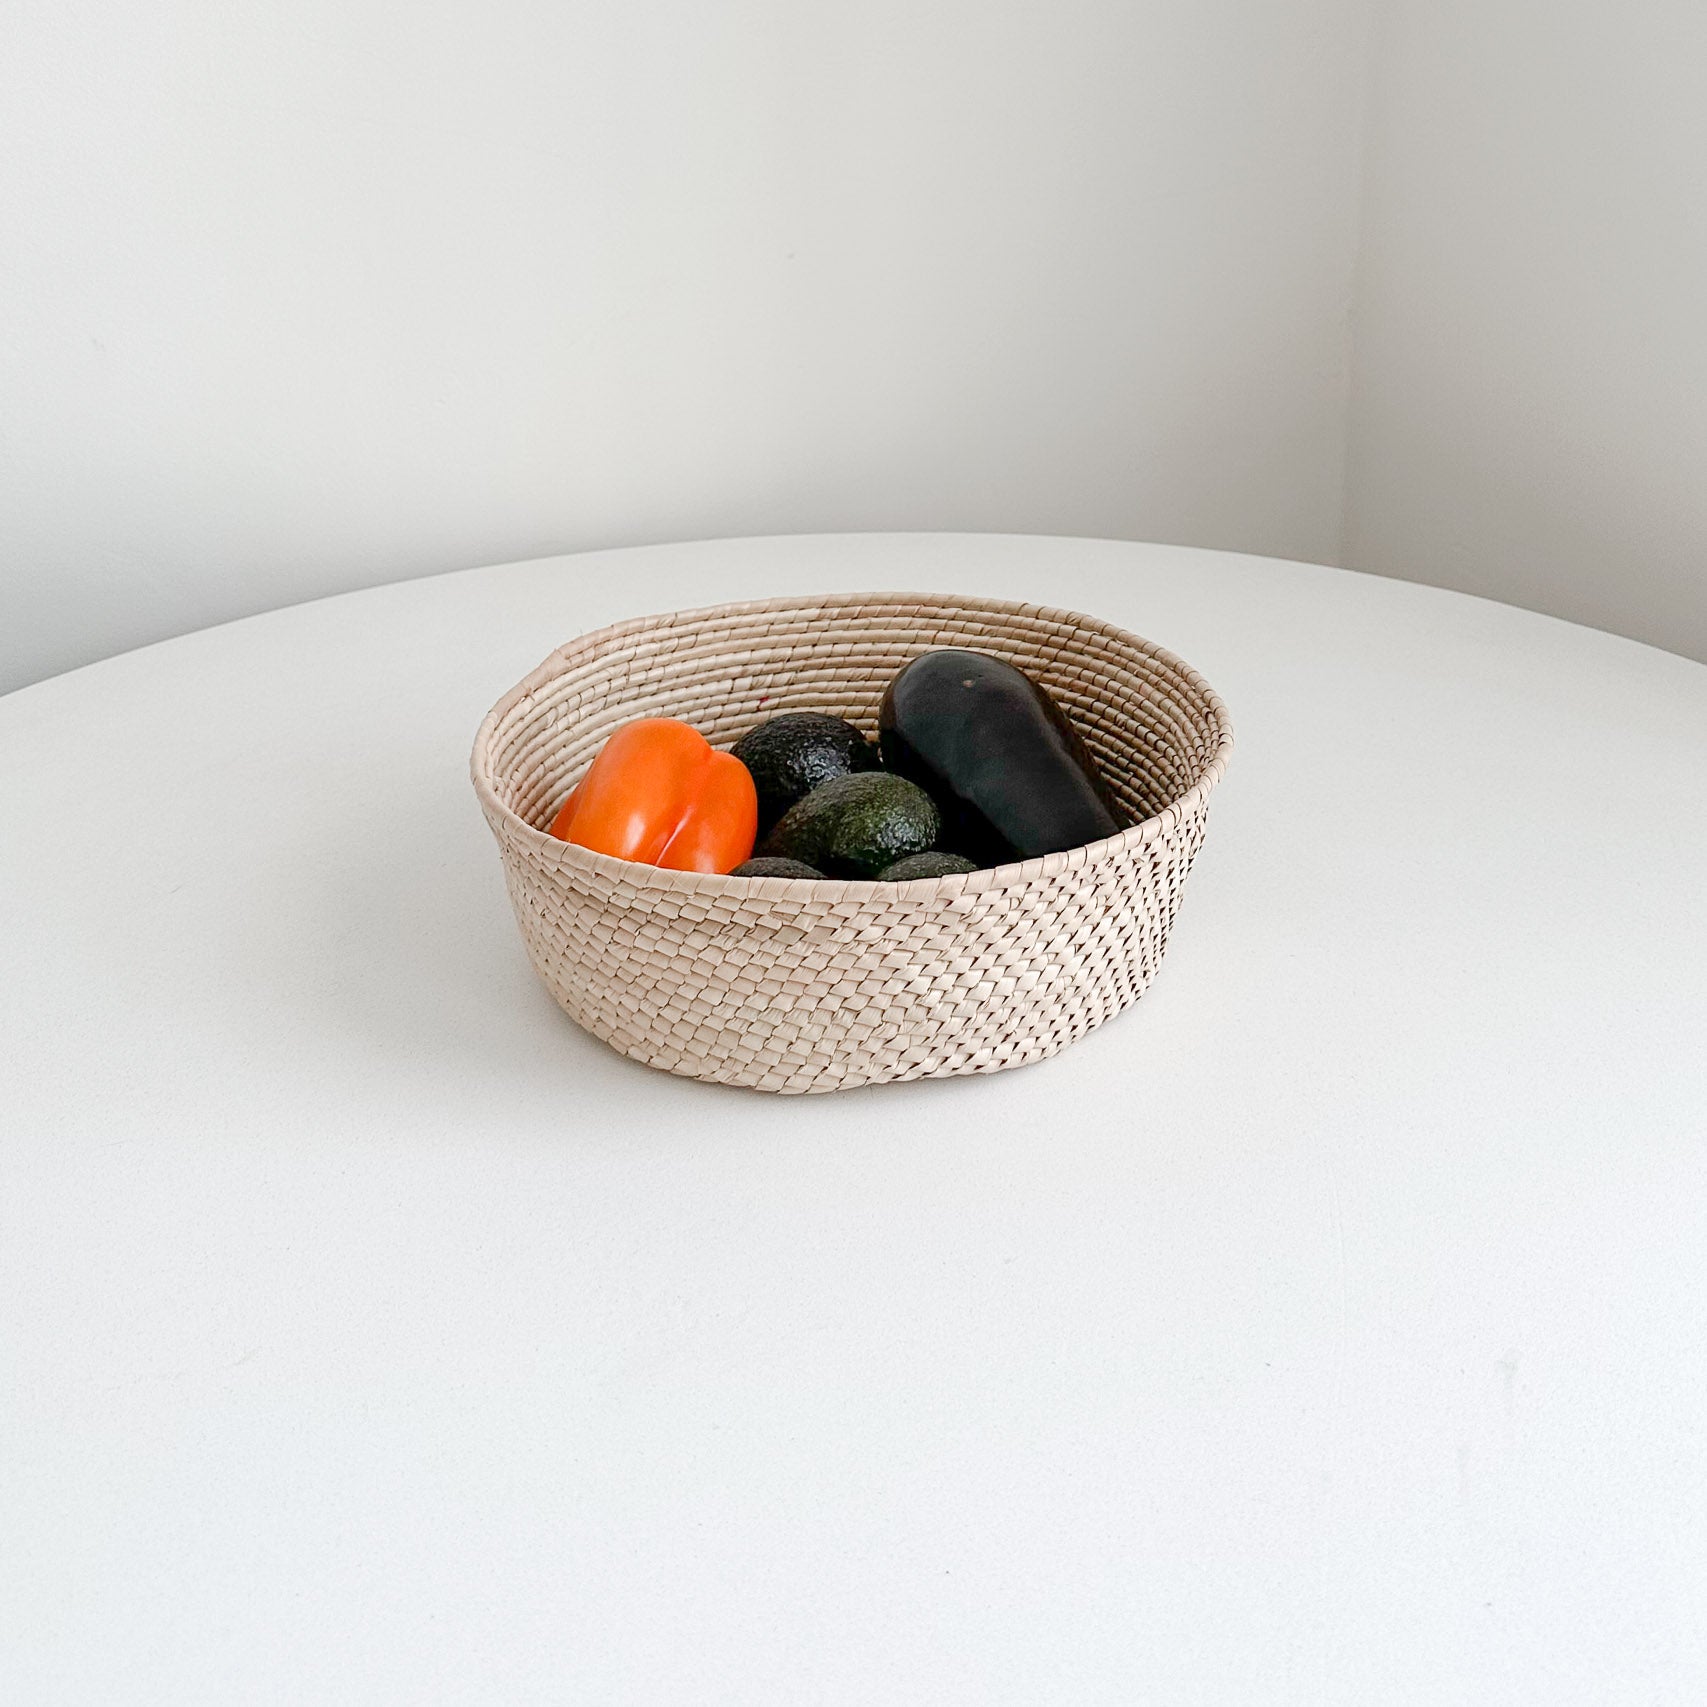 Baja palm storage basket with fruit.